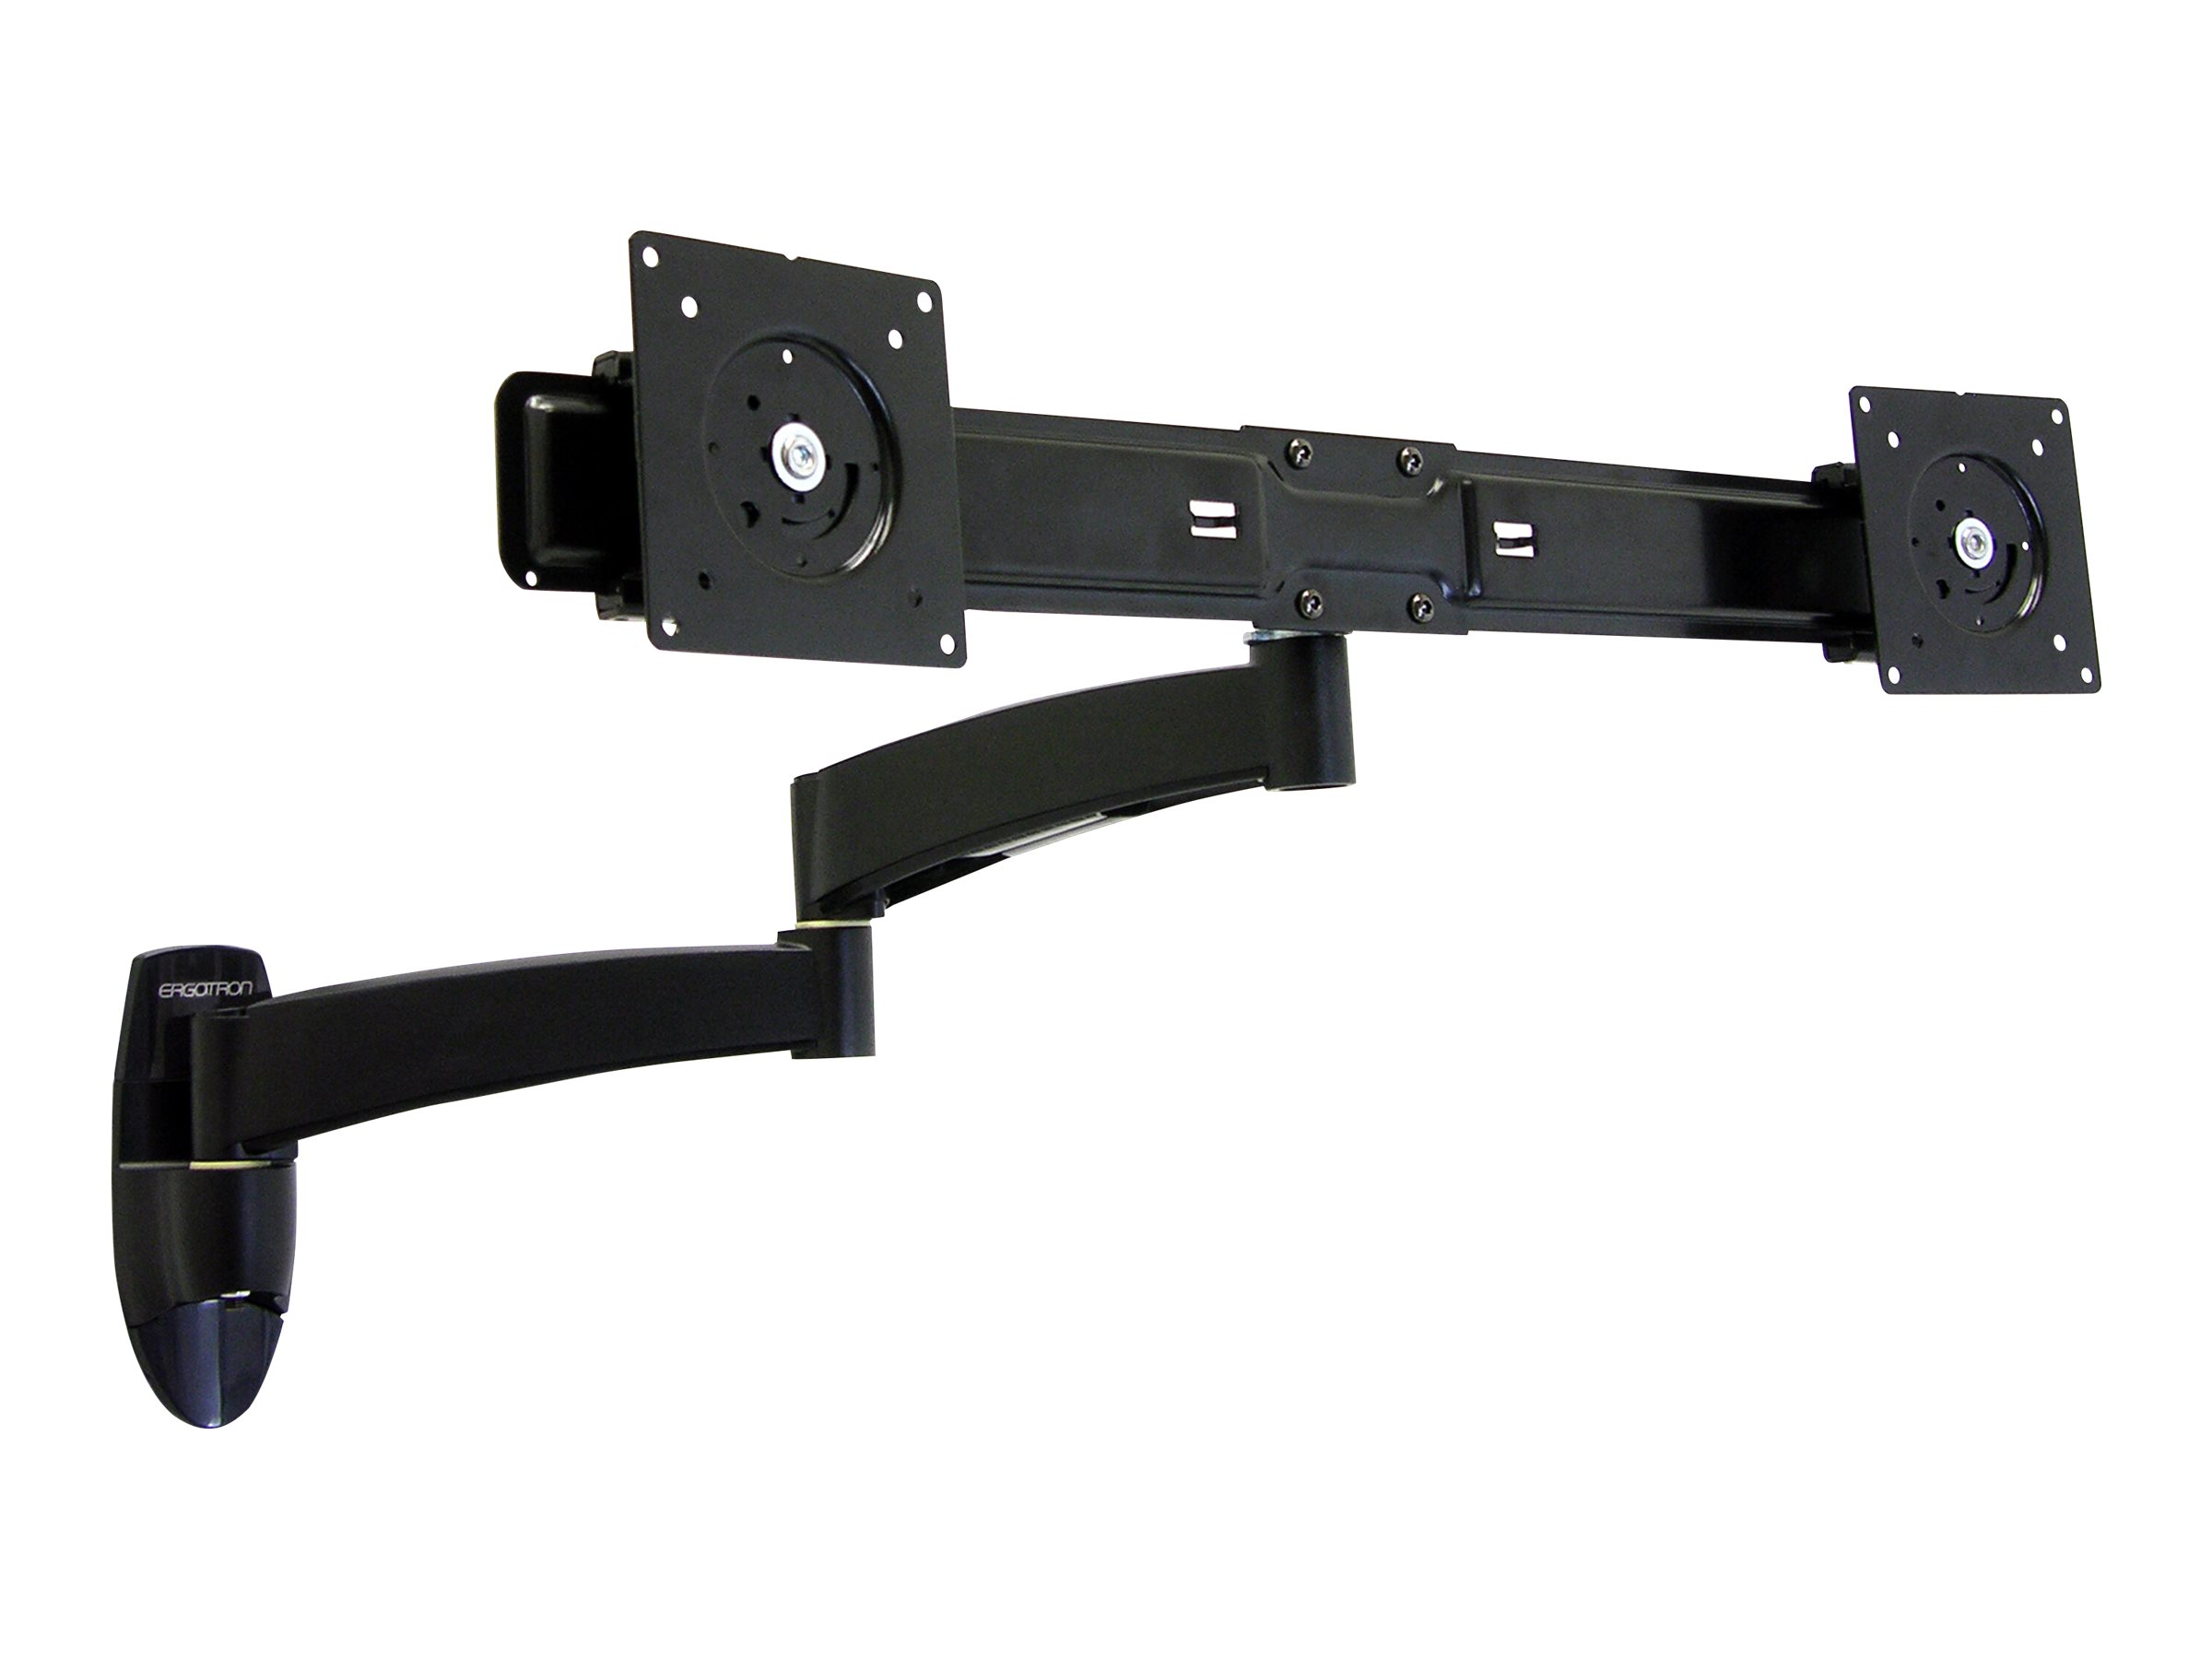 Ergotron 200 Series - Befestigungskit (Wandbefestigung, Doppelgelenkarm, Querstange, 2 VESA-Adapter, 2 Aufsätze) - einstellbarer Arm - für 2 LCD-Displays - Stahl - Schwarz - Bildschirmgröße: bis zu 55,9 cm (bis zu 22 Zoll)